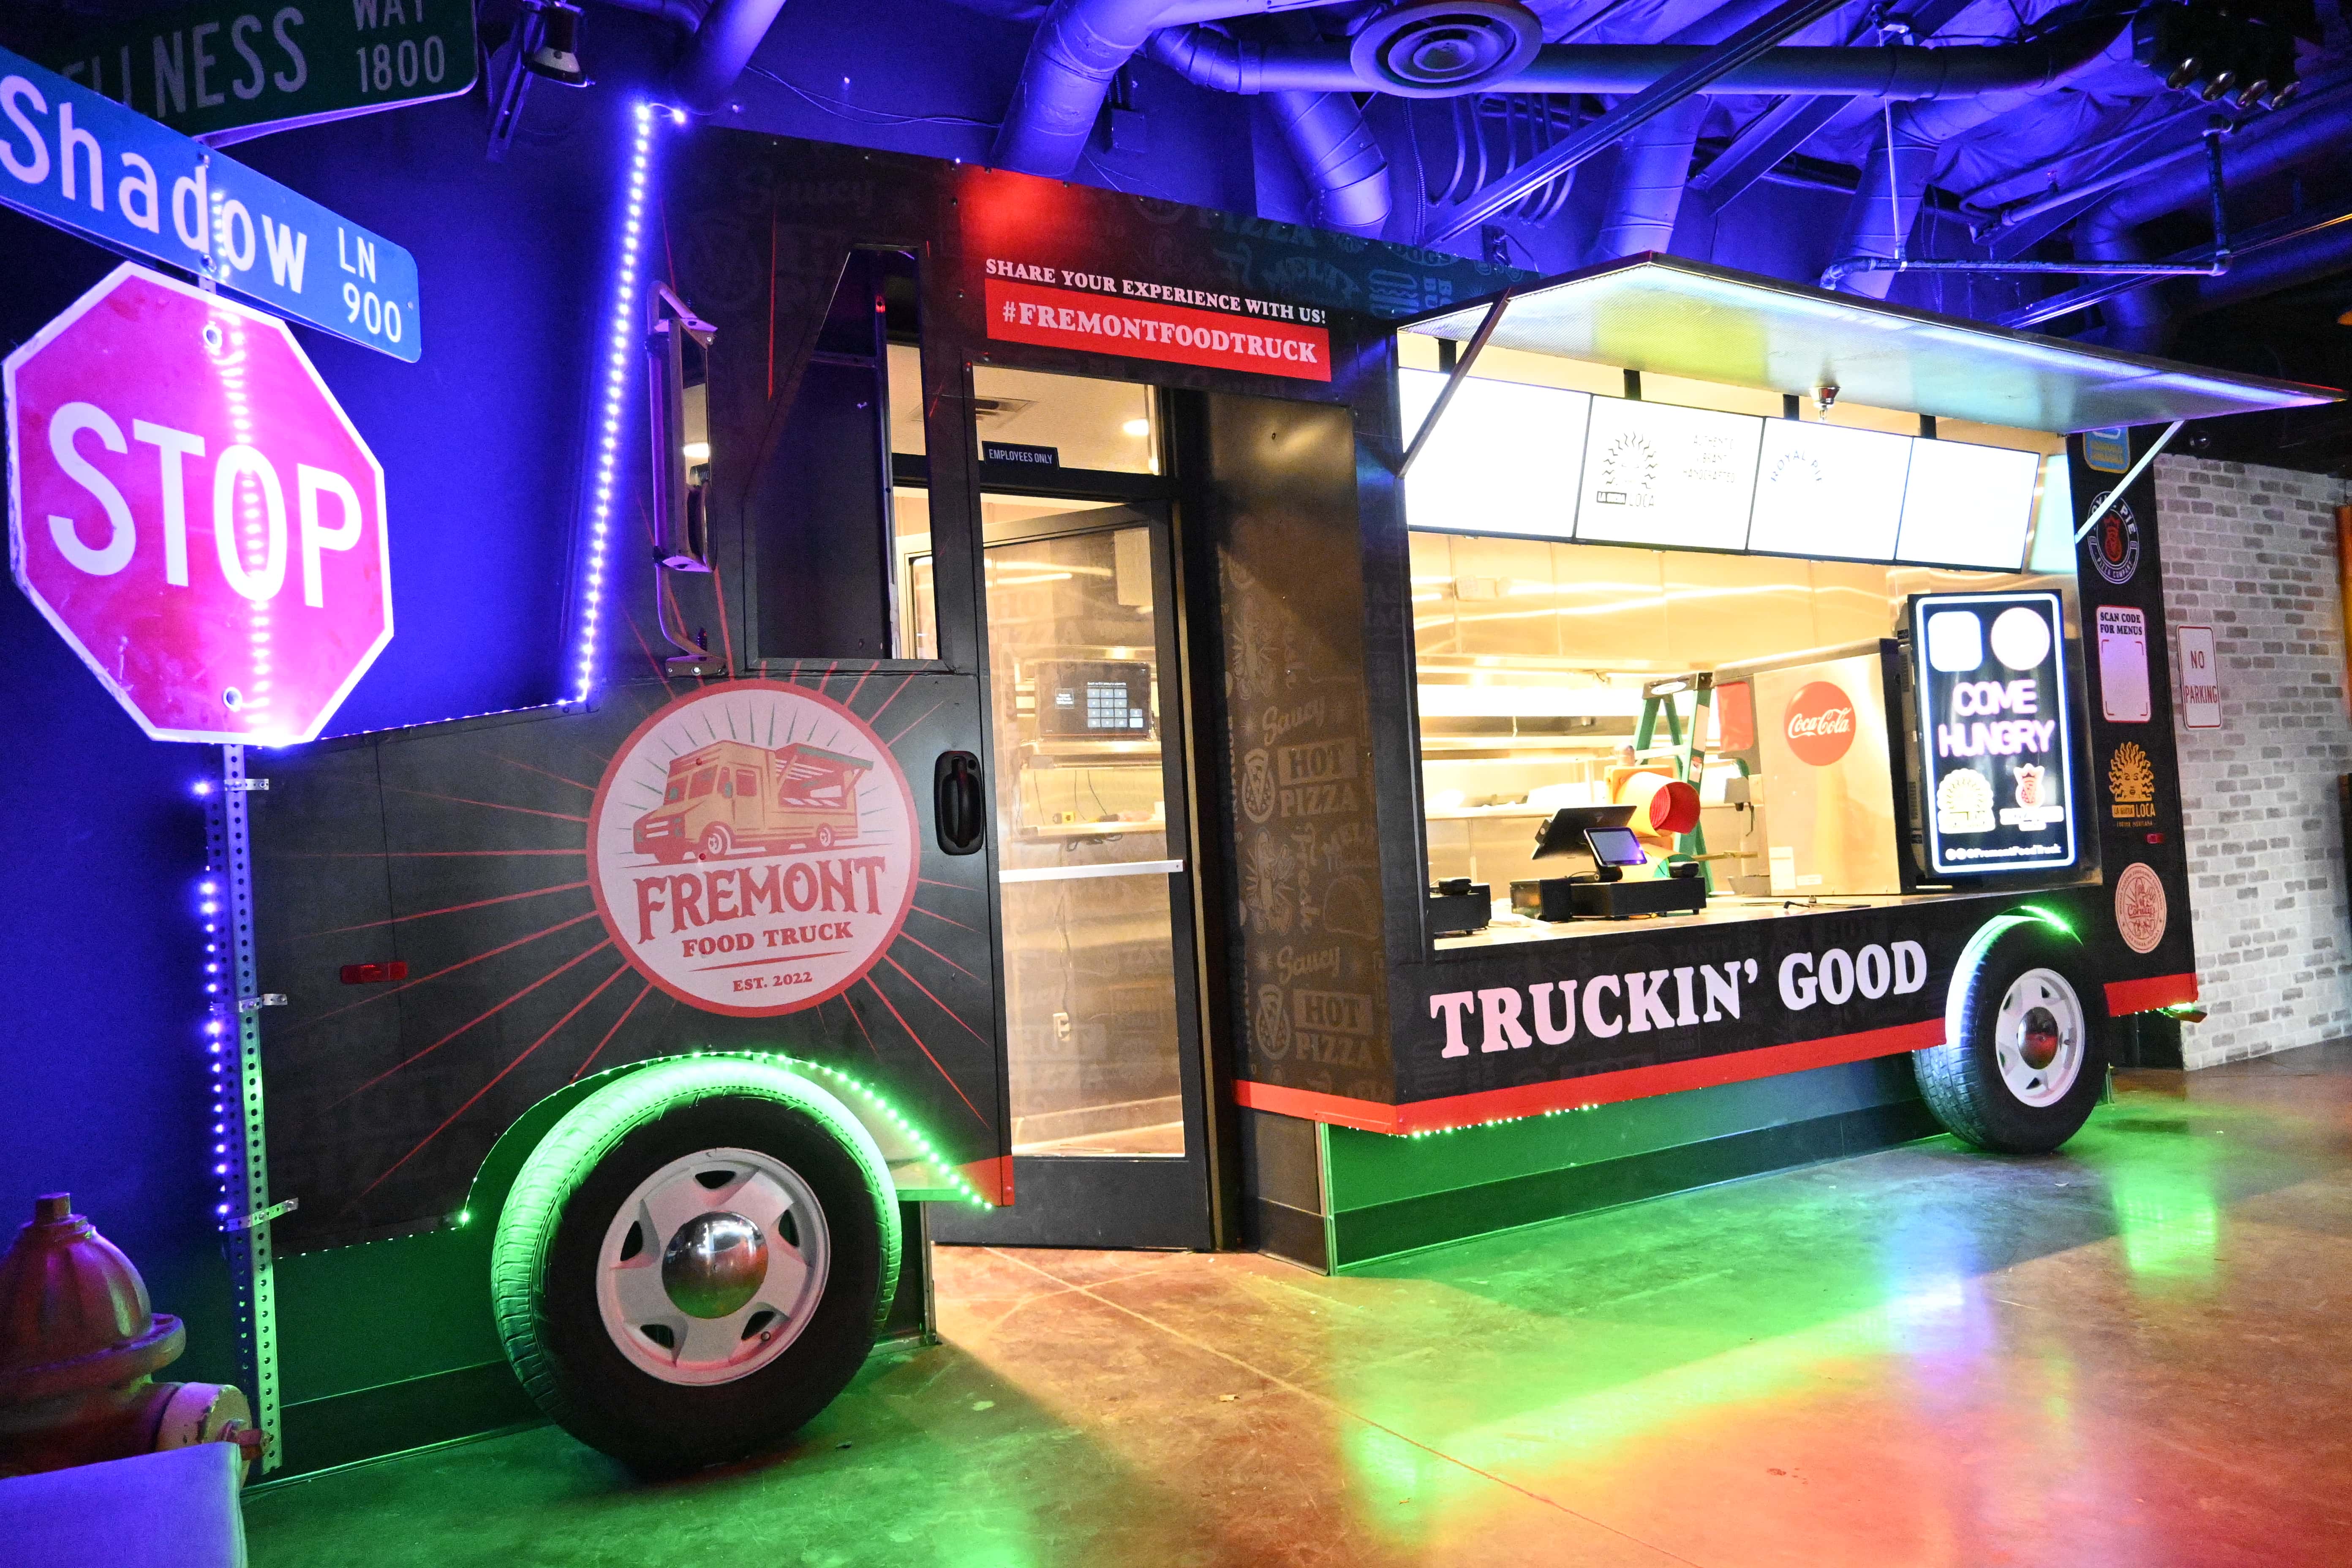 Fremont Food Truck - Las Vegas, NV, US, food truck for sale
